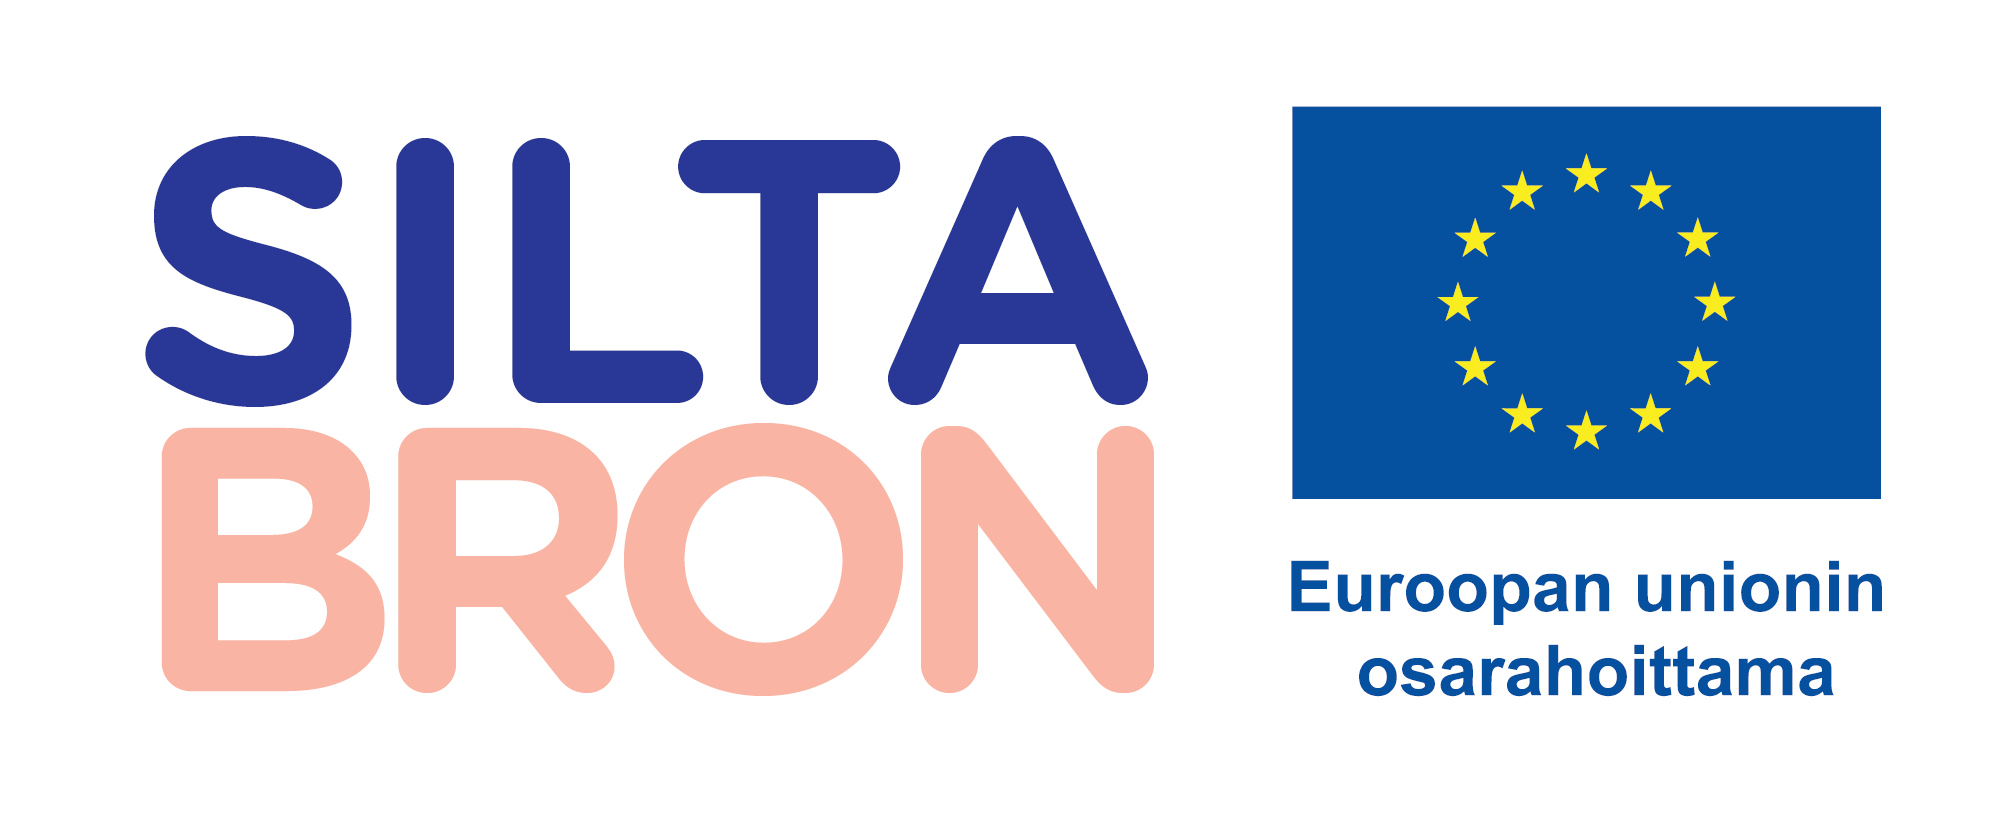 Logo, jossa on hankkeen nimi Silta Bron, EU:n lippu ja teksti Euroopan unionin osarahoittama.